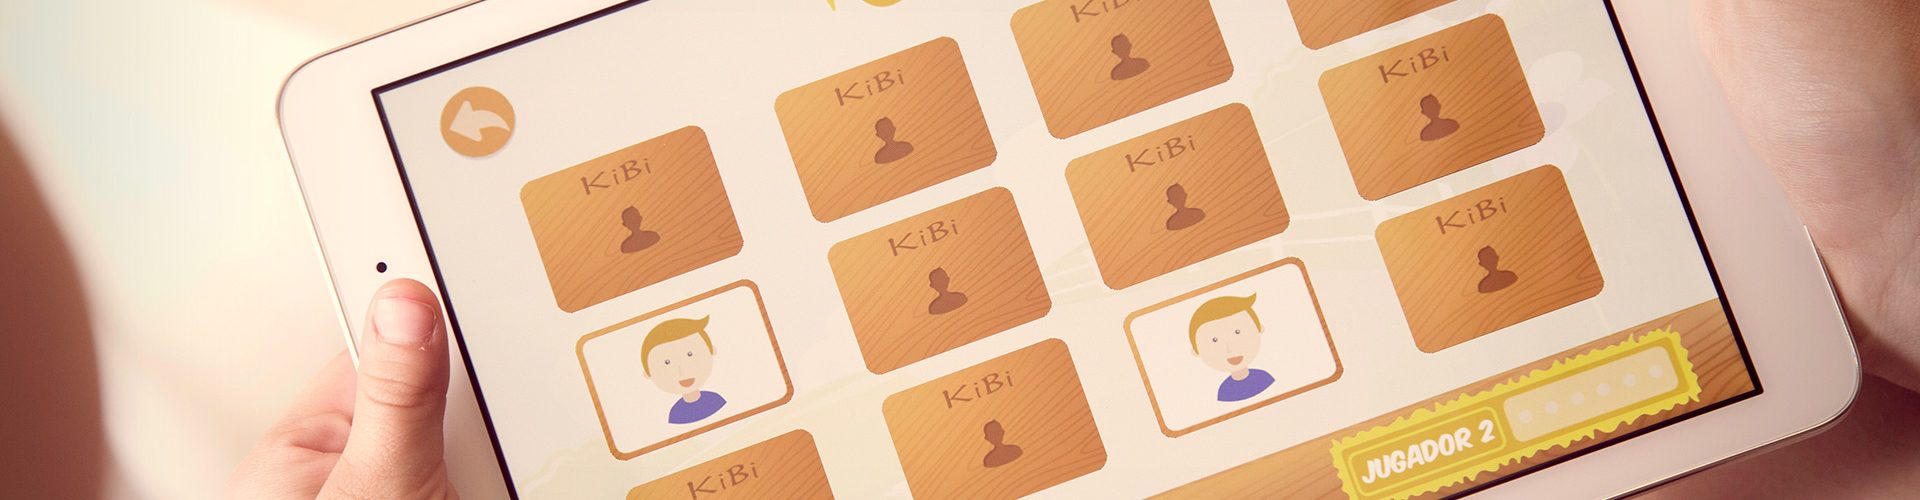 KiBi app for children